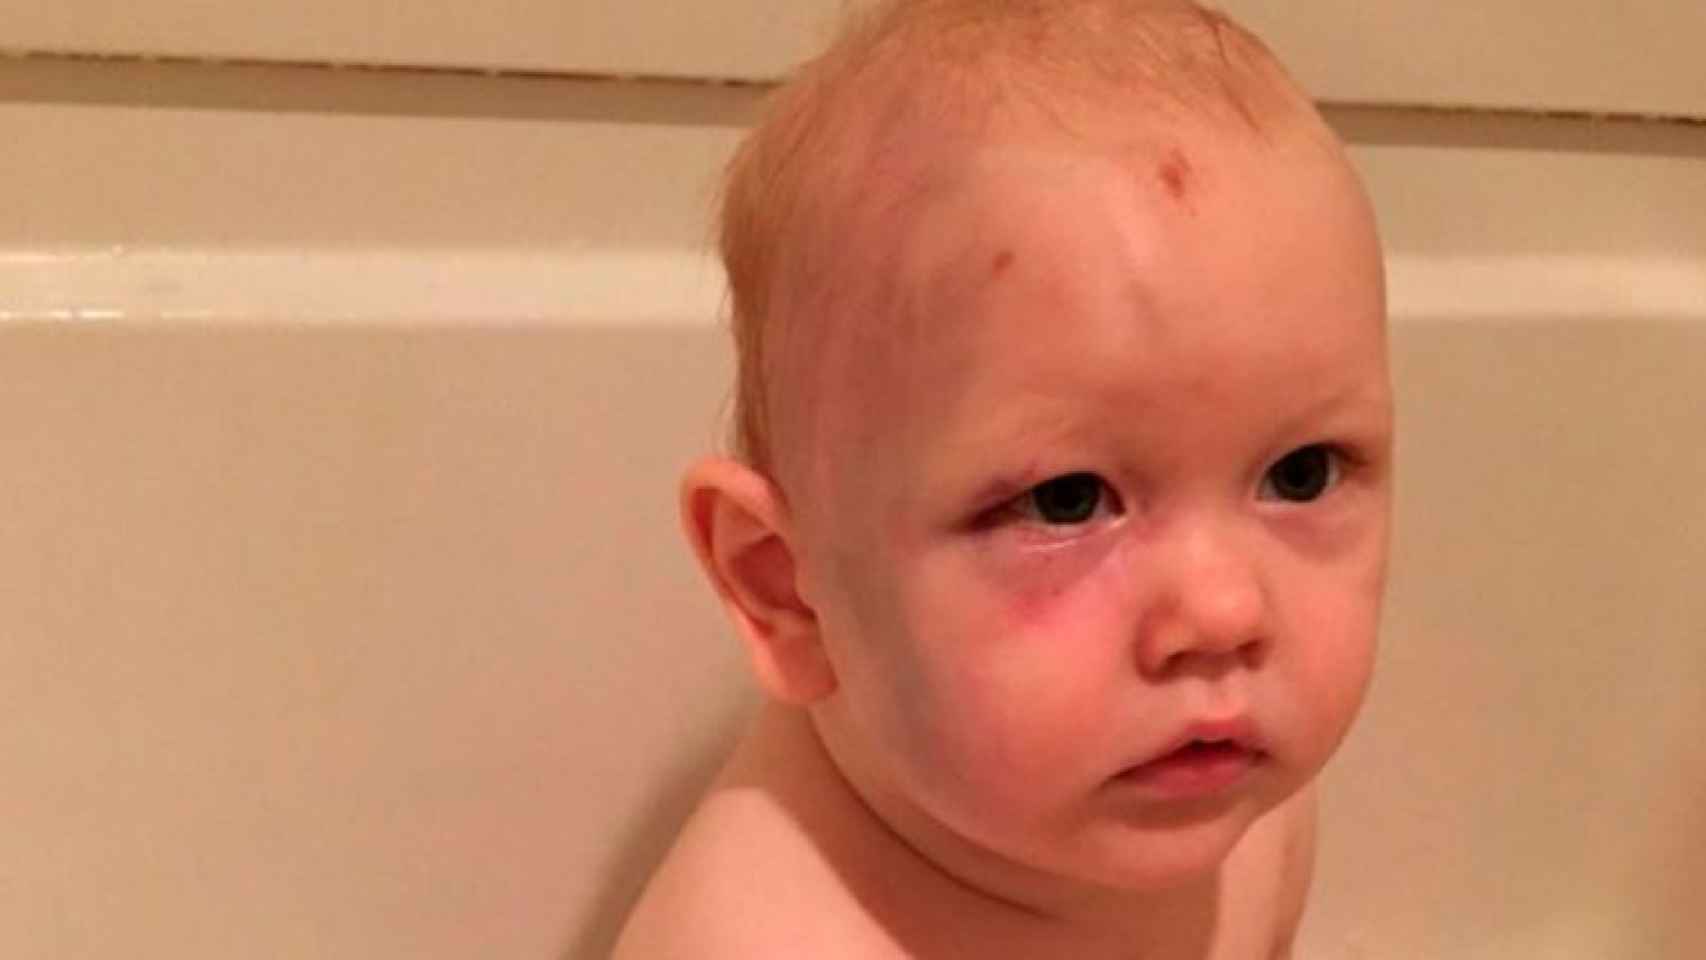 El bebé fue golpeado por la niñera según sus padres / Facebook